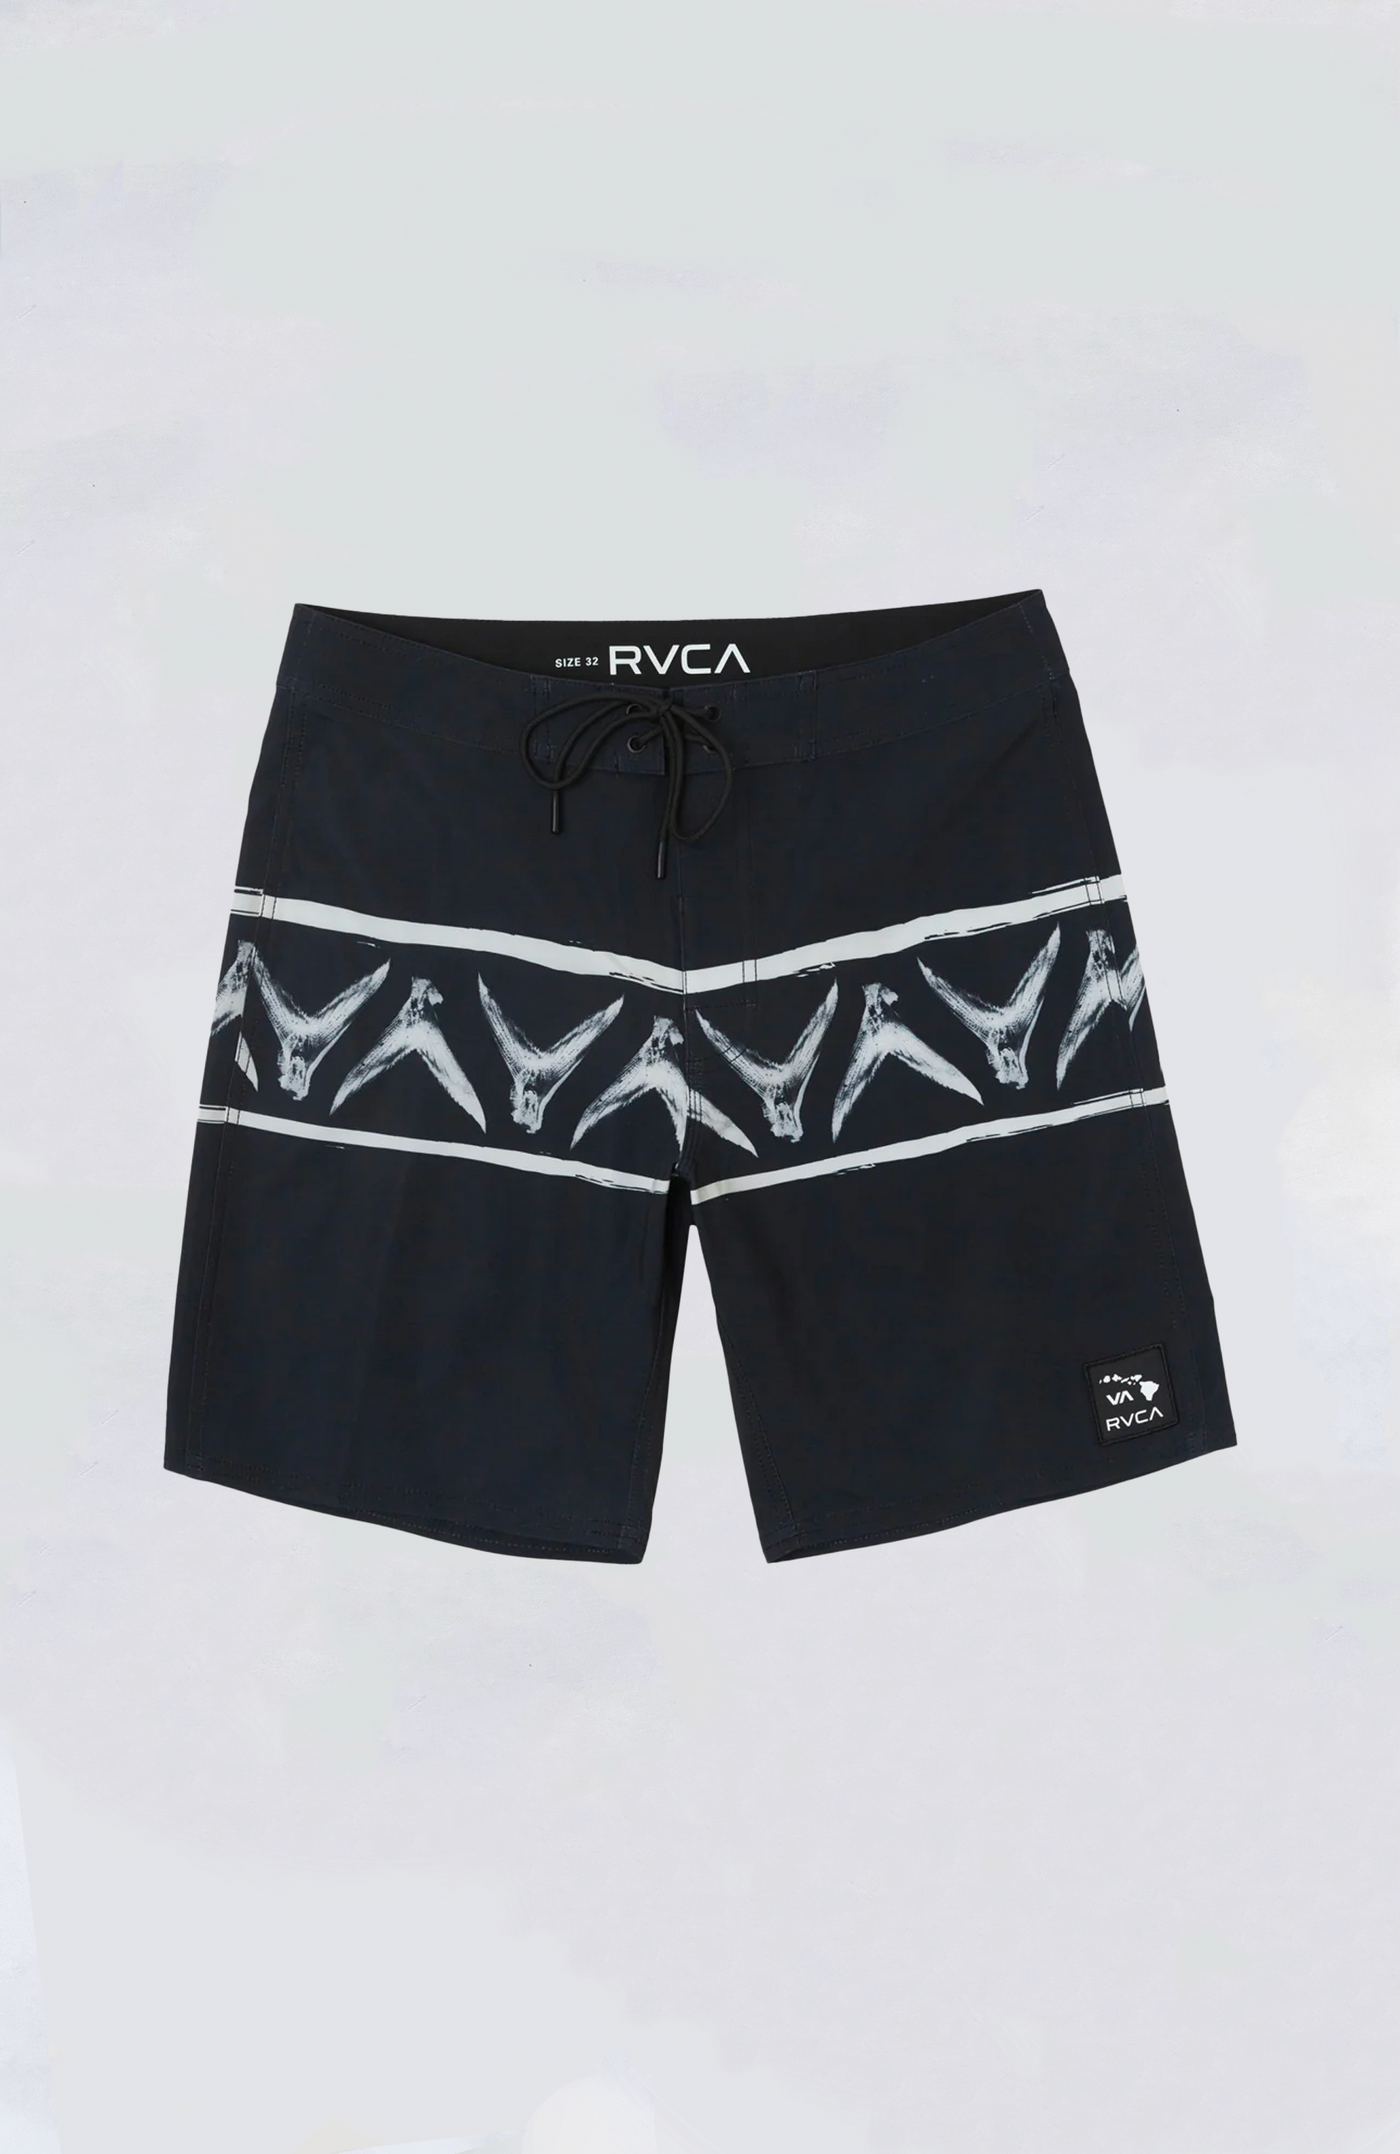 RVCA Boardshort - Legend and Mana VA Banded